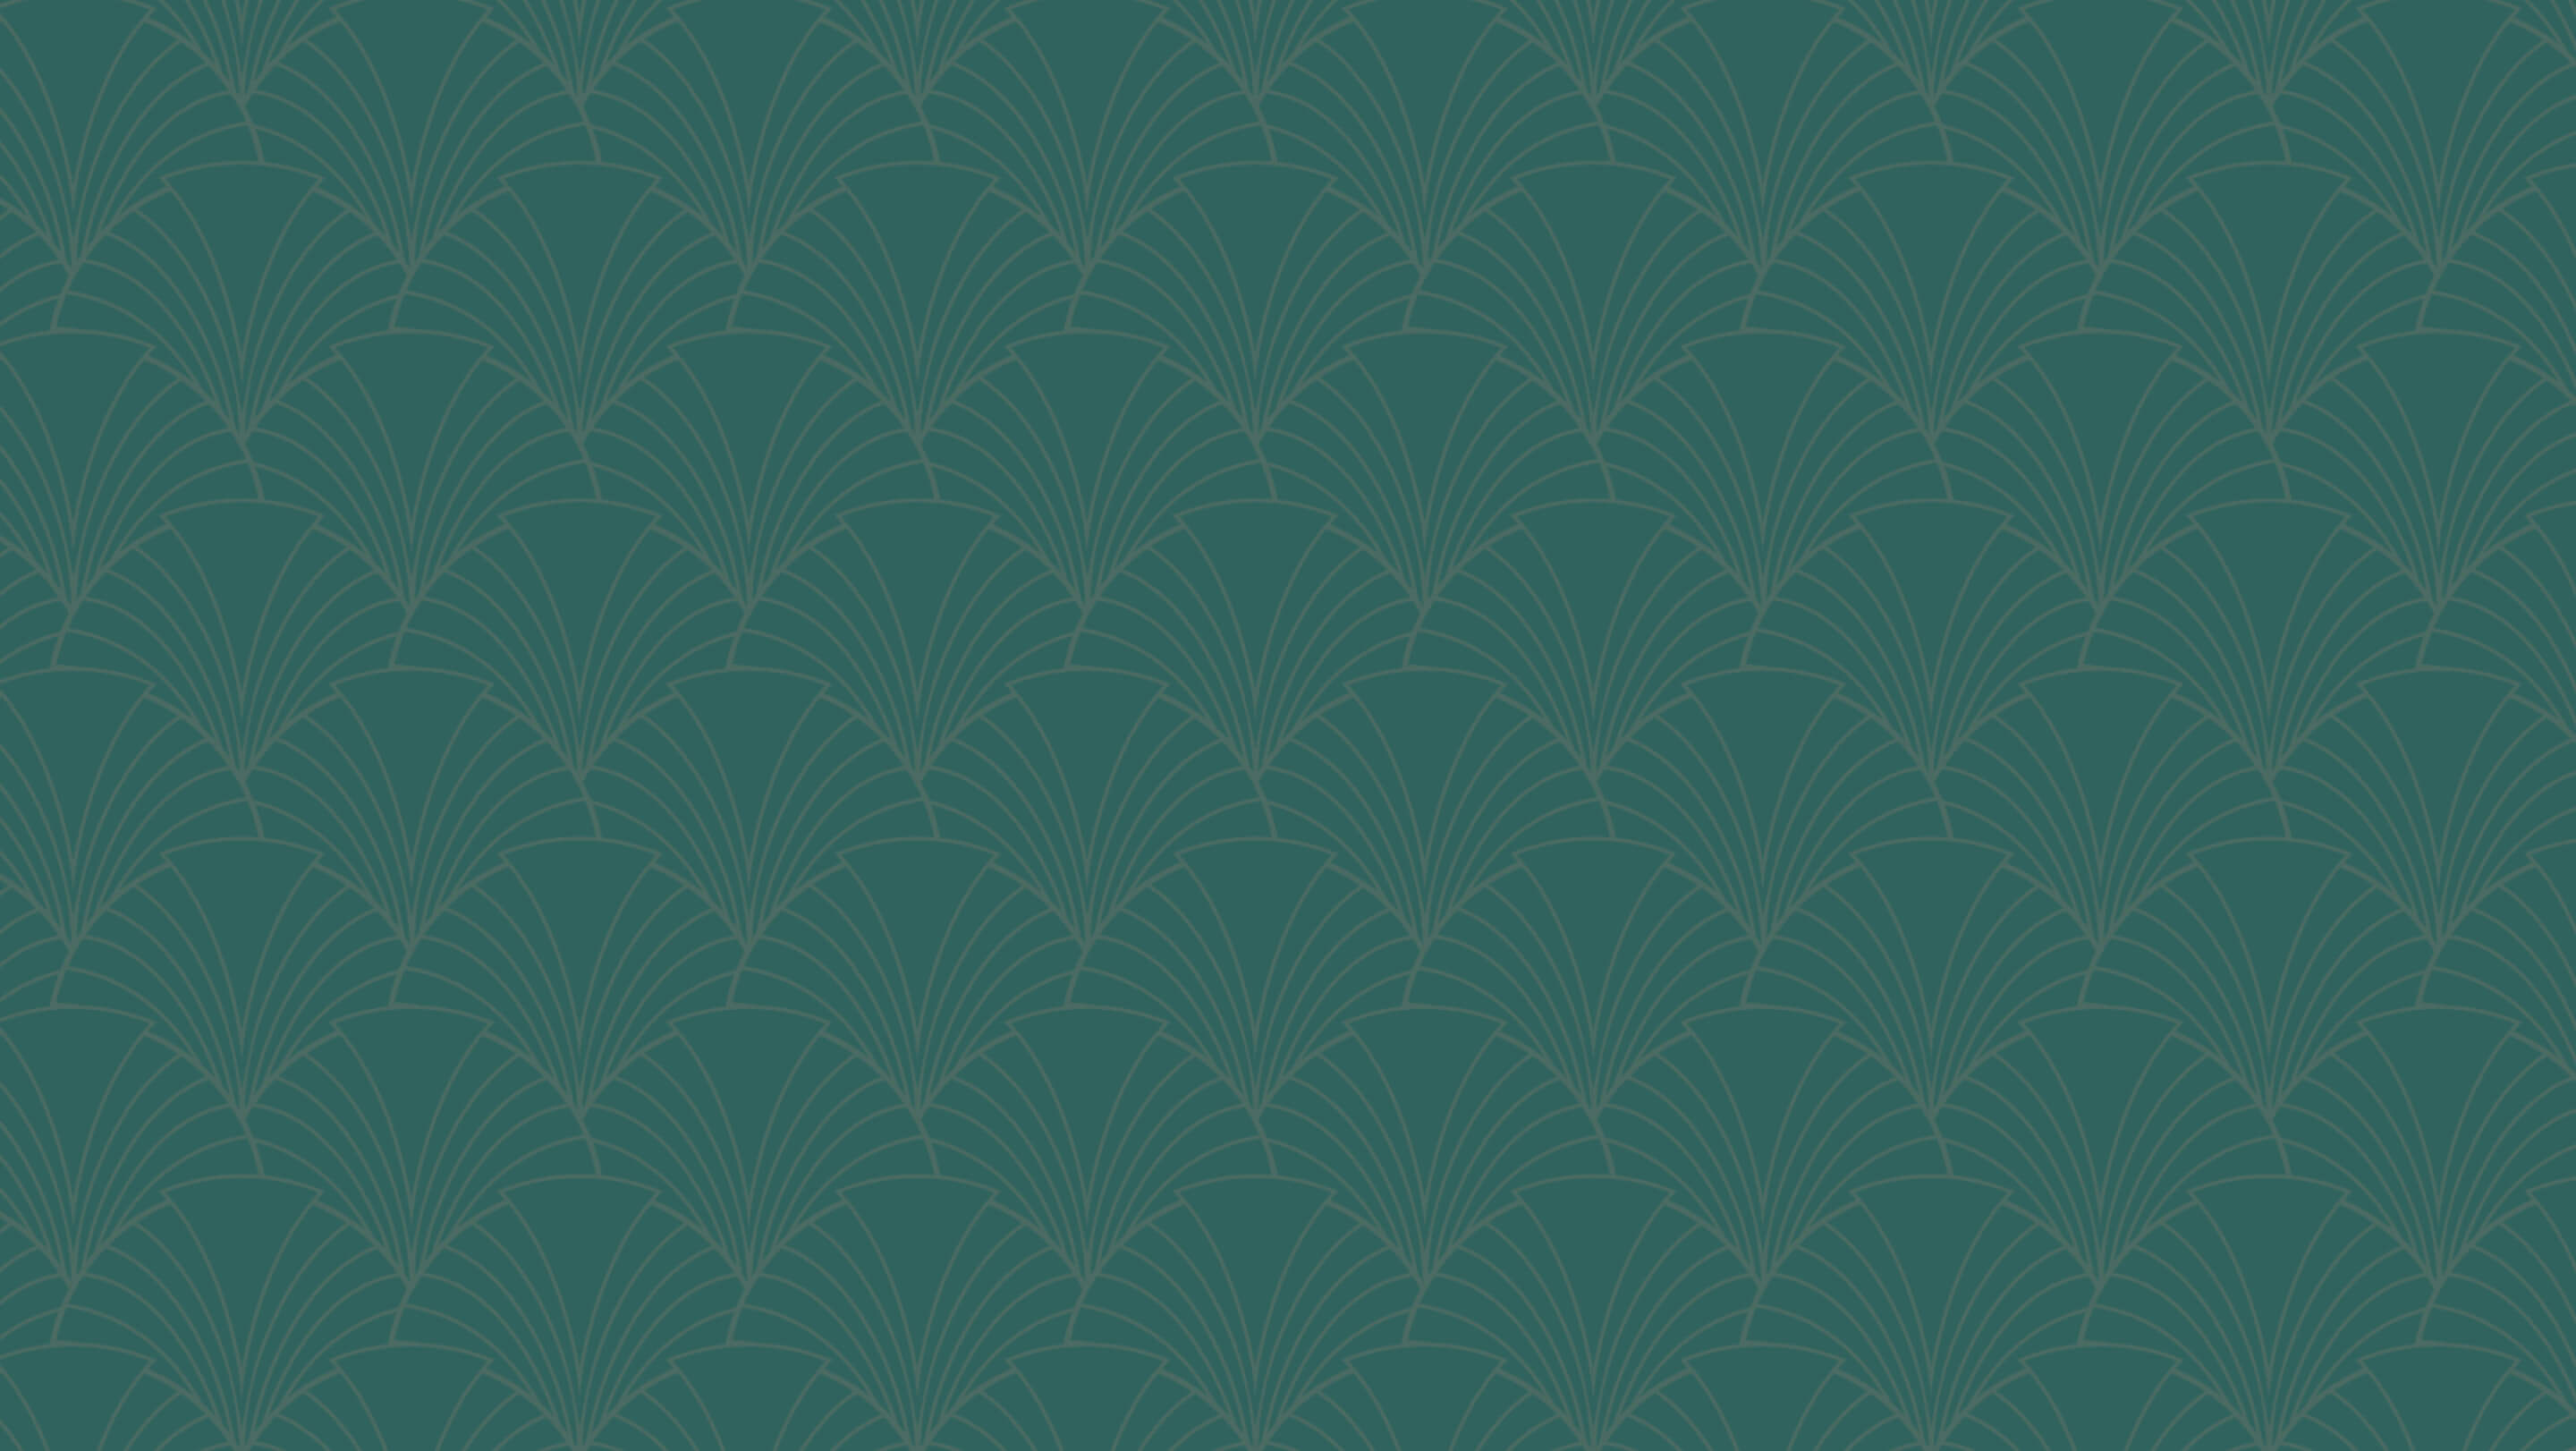 lovo jewelry fan pattern background in green